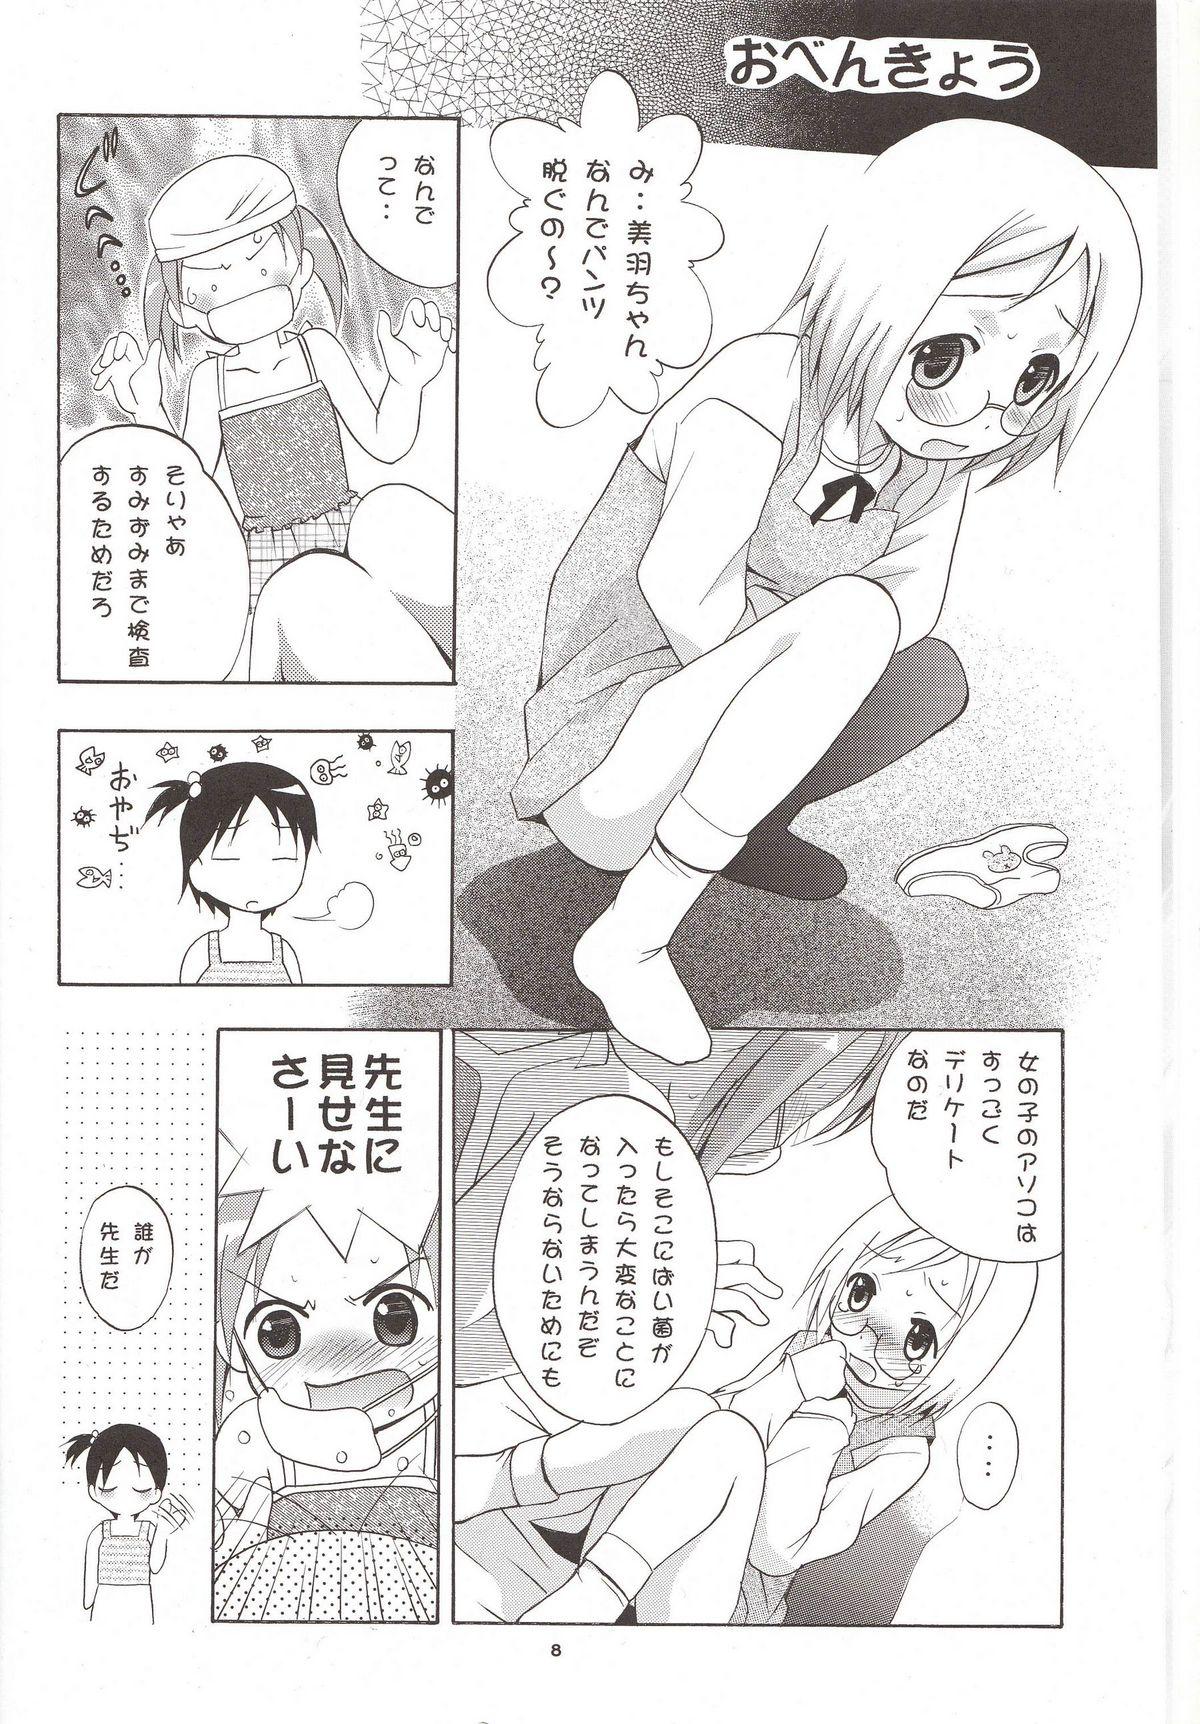 Toy Mousou Mini Theater 16 - Ichigo mashimaro Piercing - Page 7